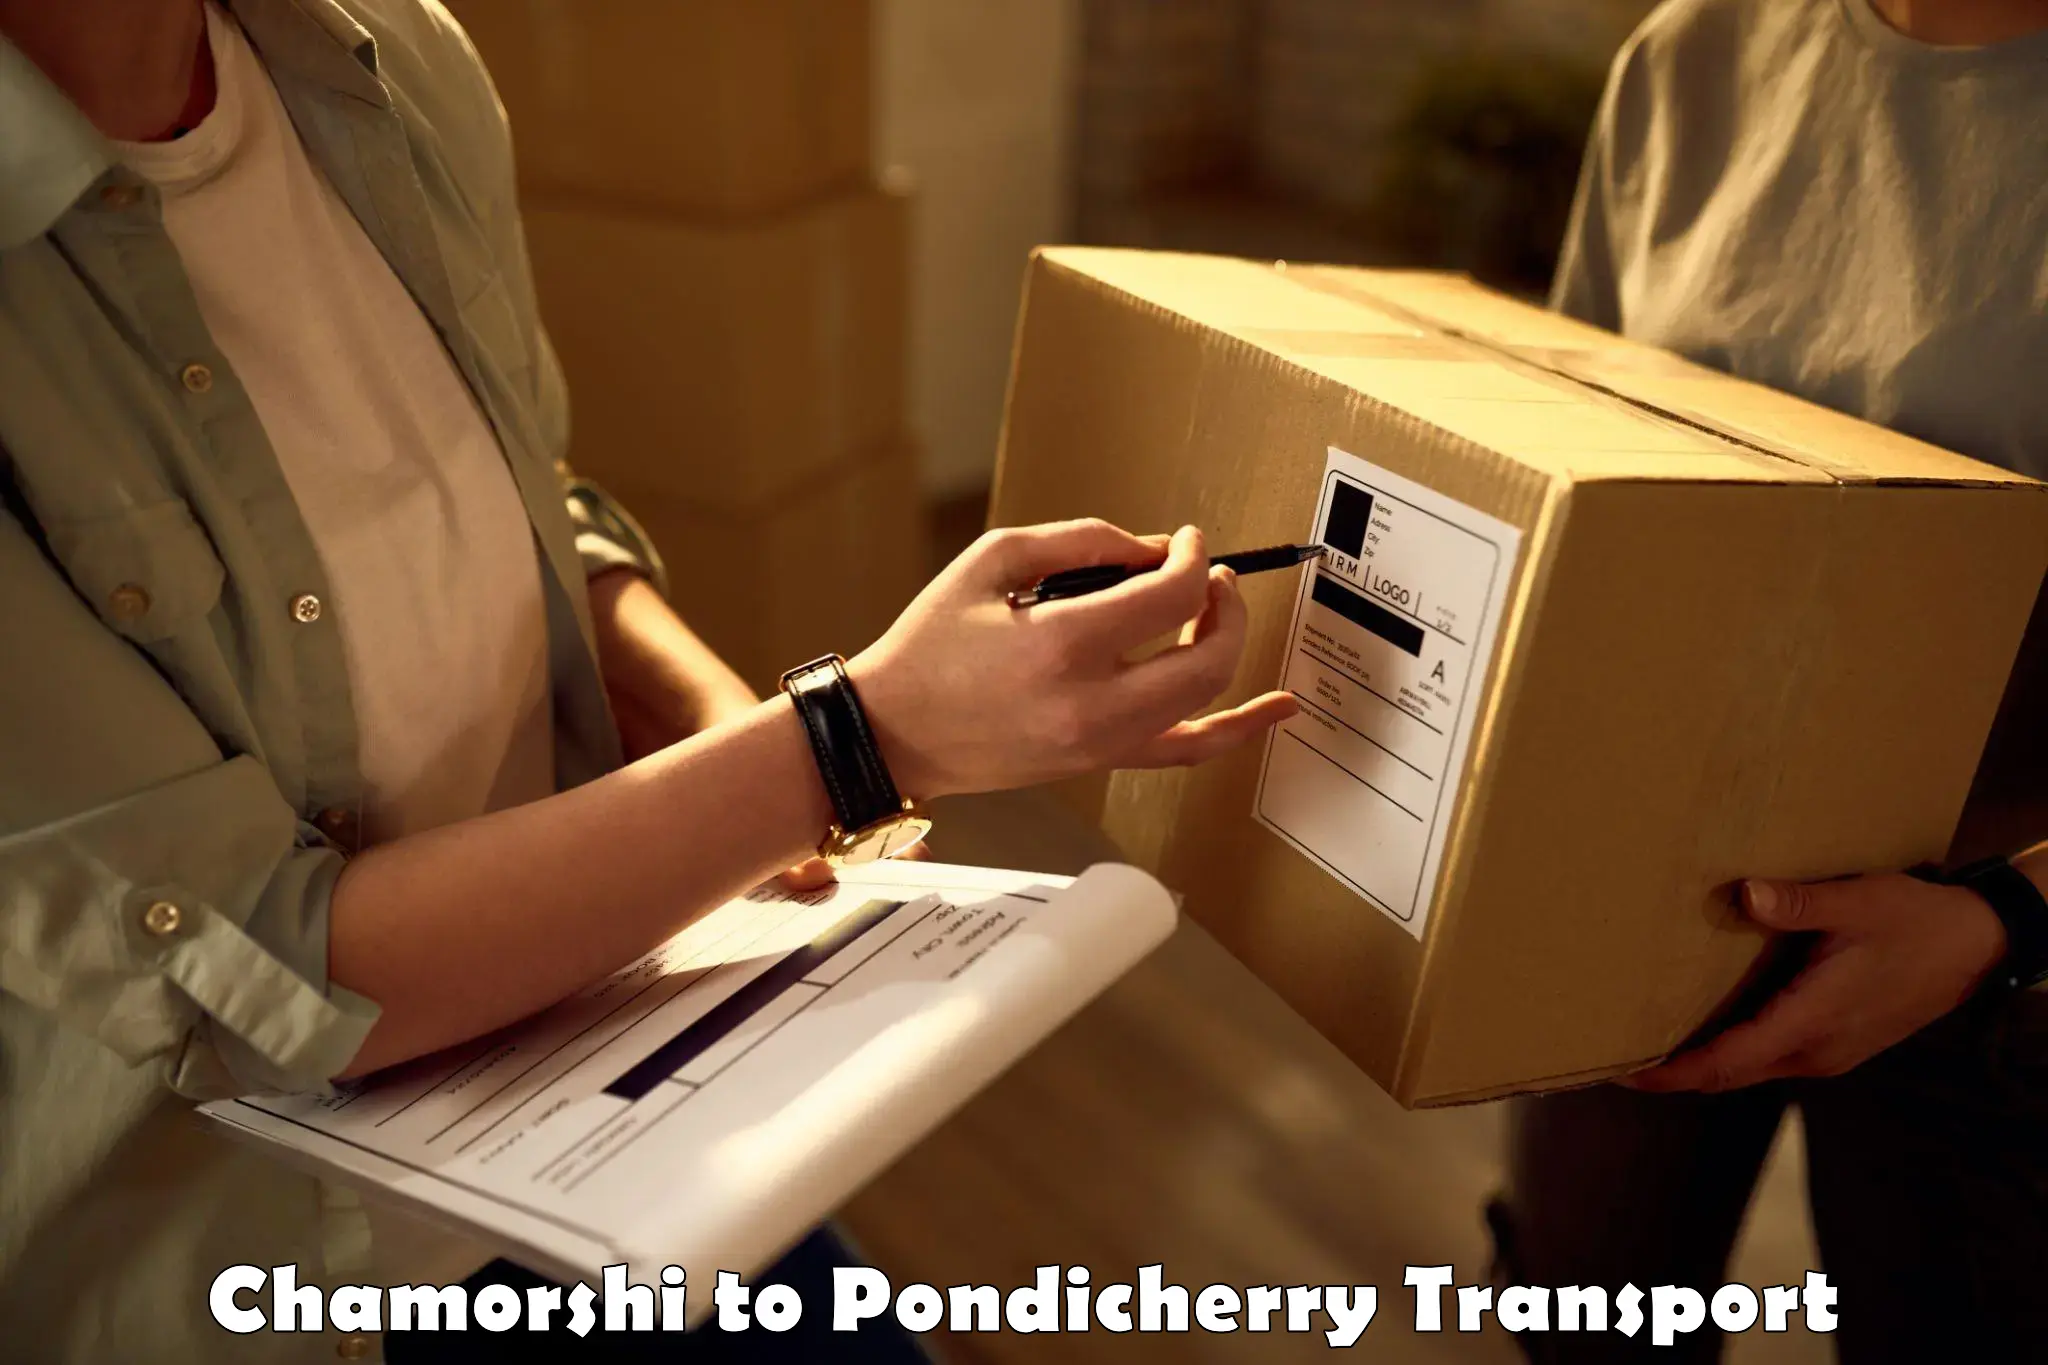 Domestic transport services Chamorshi to Pondicherry University